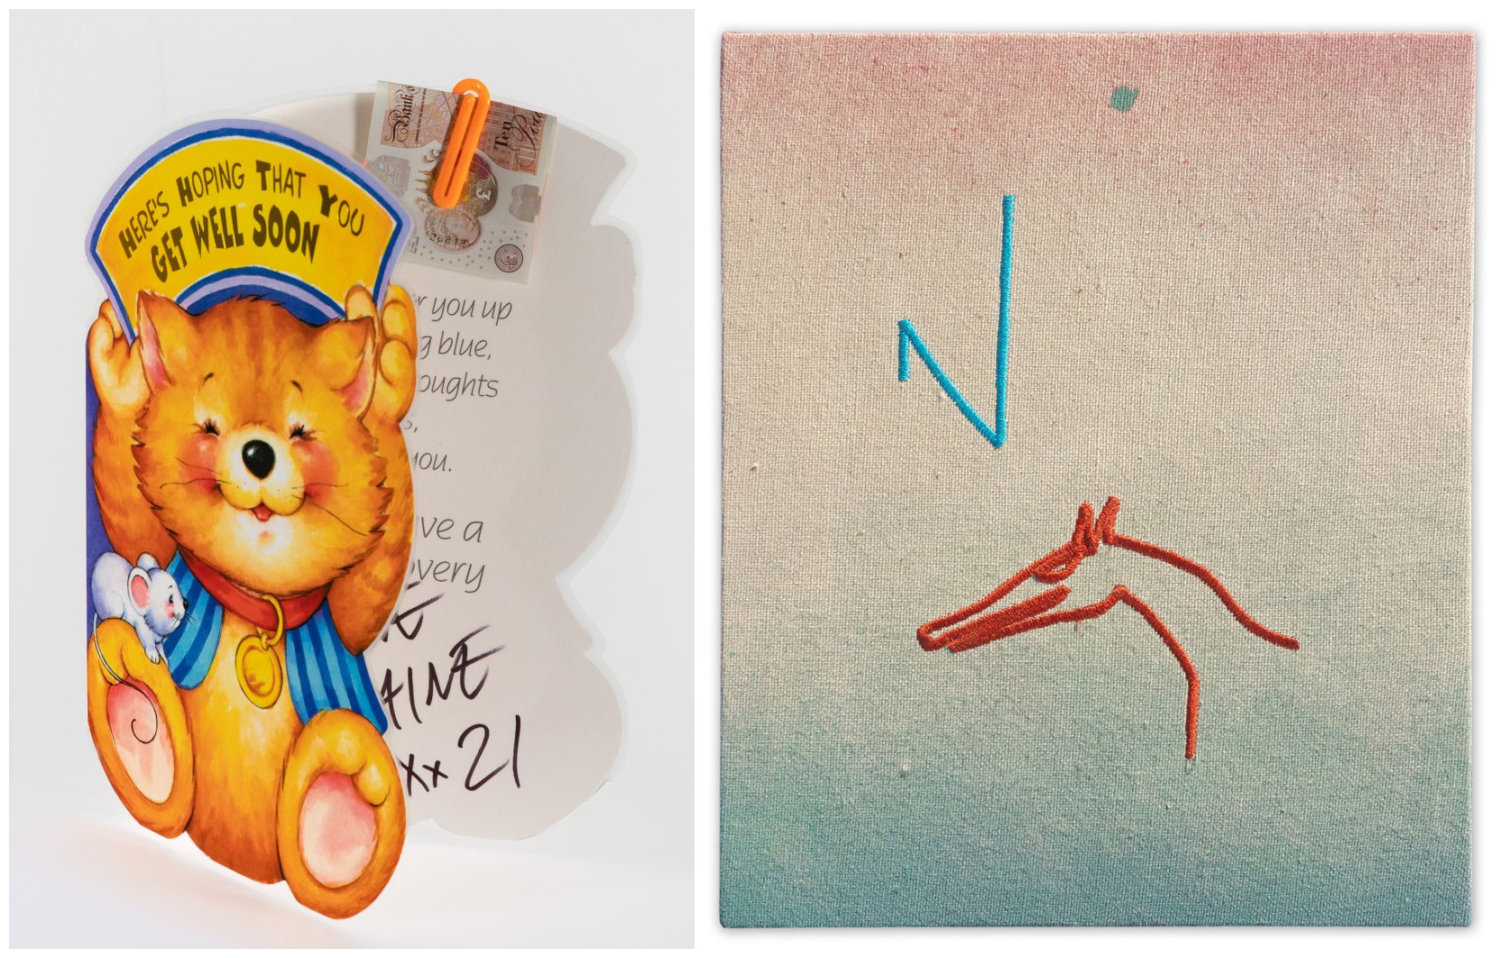 Links eine Grußkarte mit Katze, die ein Schild mit der Aufschrift "Here's Hoping That You Get Well Soon" trägt. Rechts eine bestickte Leinwandarbeit von Niko Abramidis.